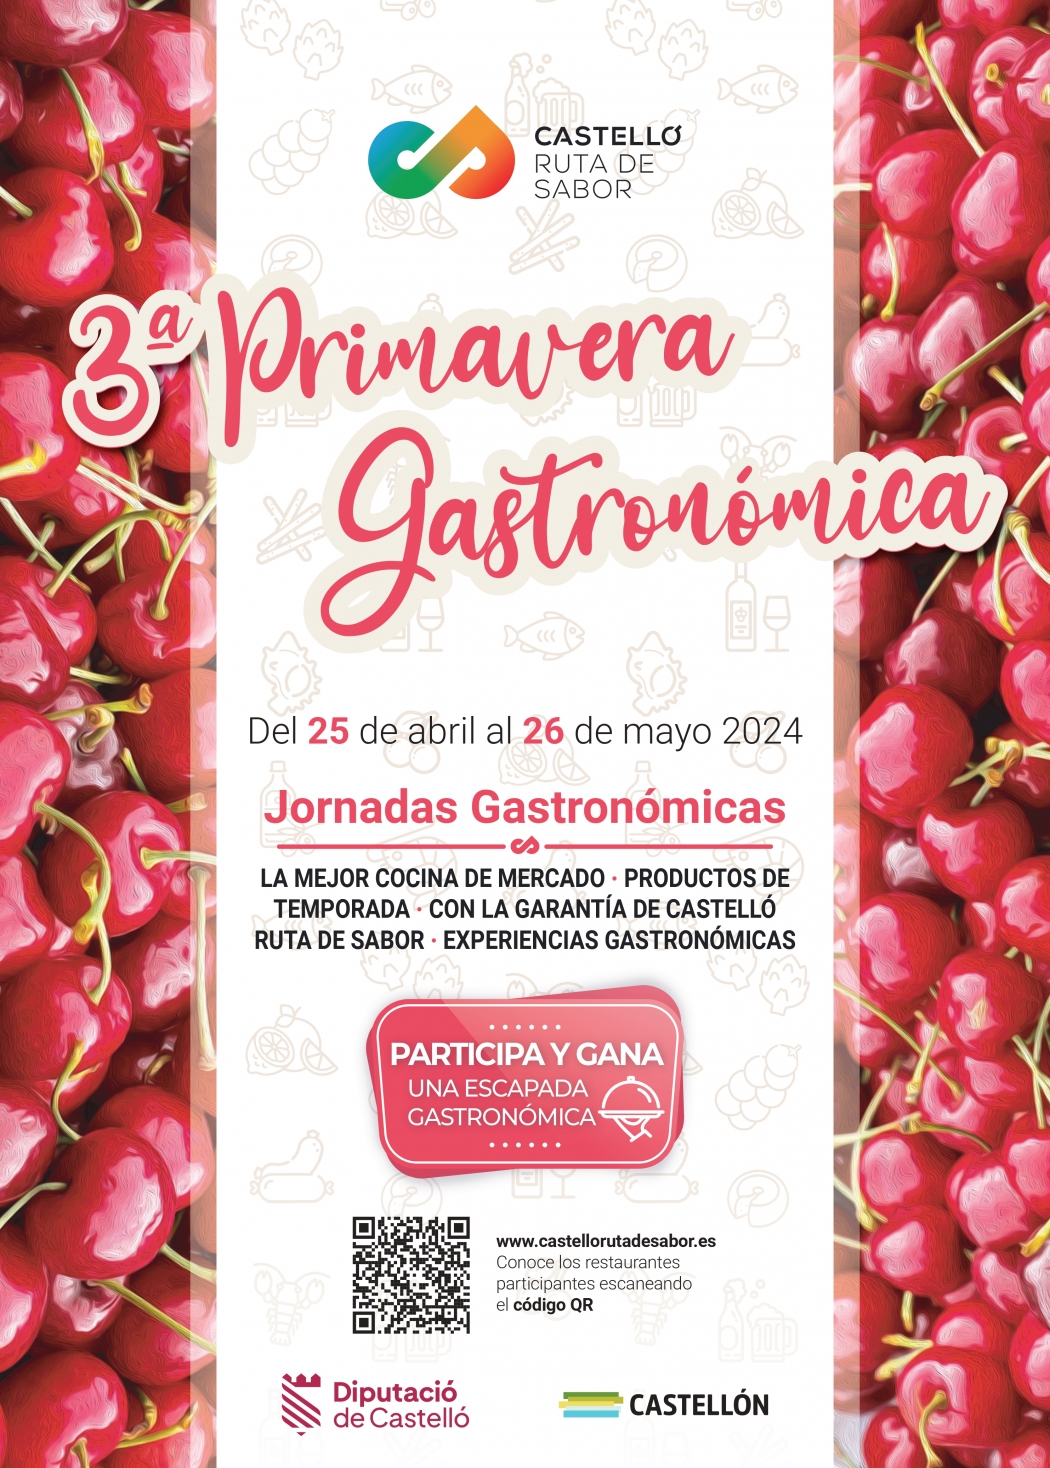 La 3ª edición de la Primavera Gastronómica Castelló Ruta de Sabor muestra la riqueza gastronómica de la provincia